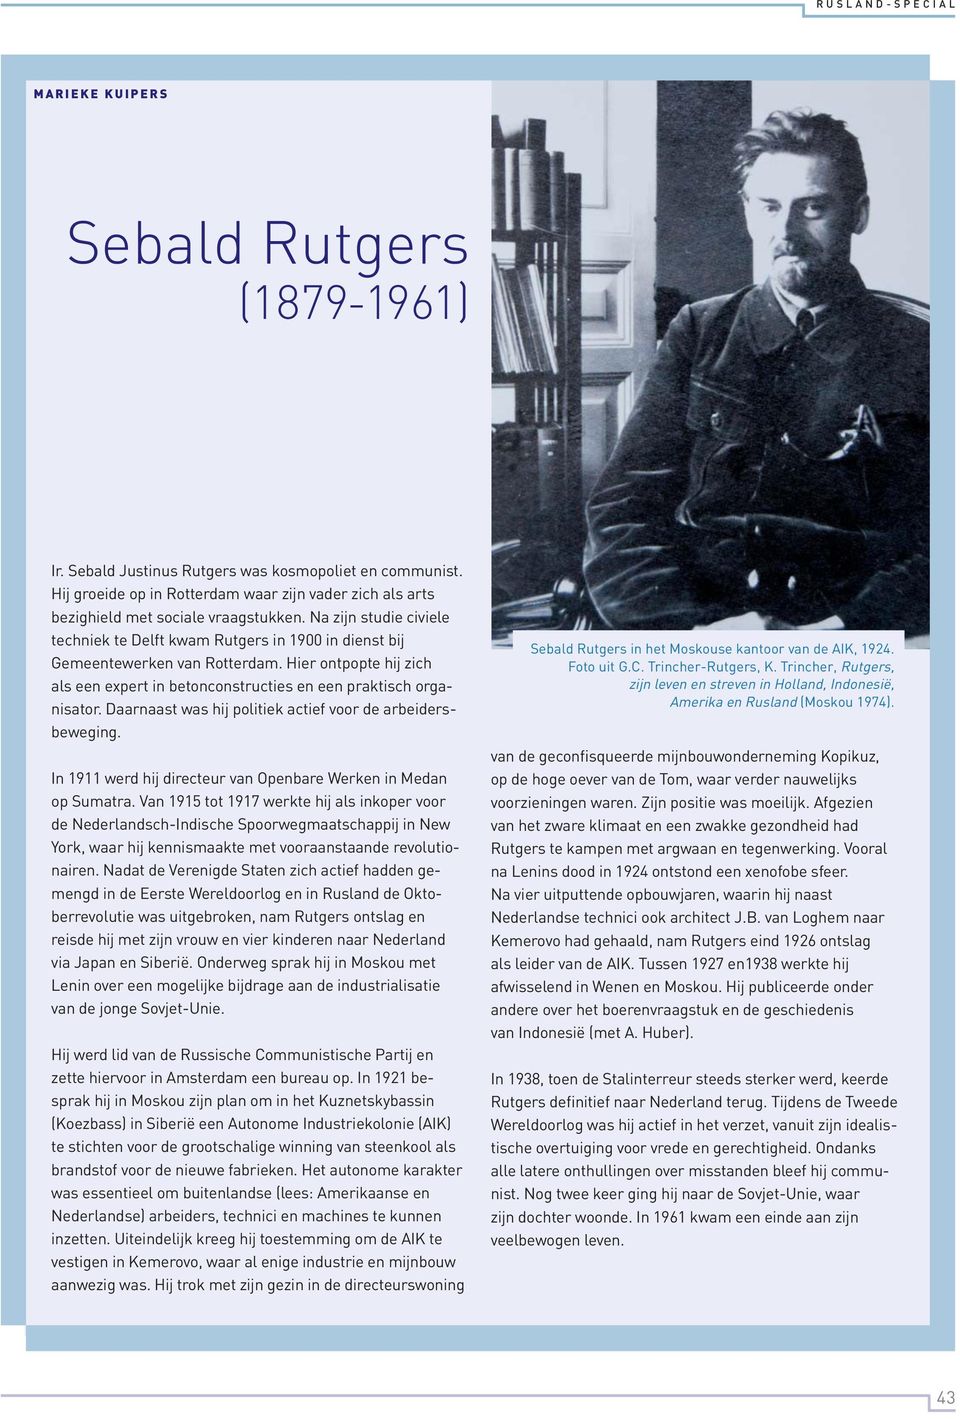 Daarnaast was hij politiek actief voor de arbeidersbeweging. In 1911 werd hij directeur van Openbare Werken in Medan op Sumatra.